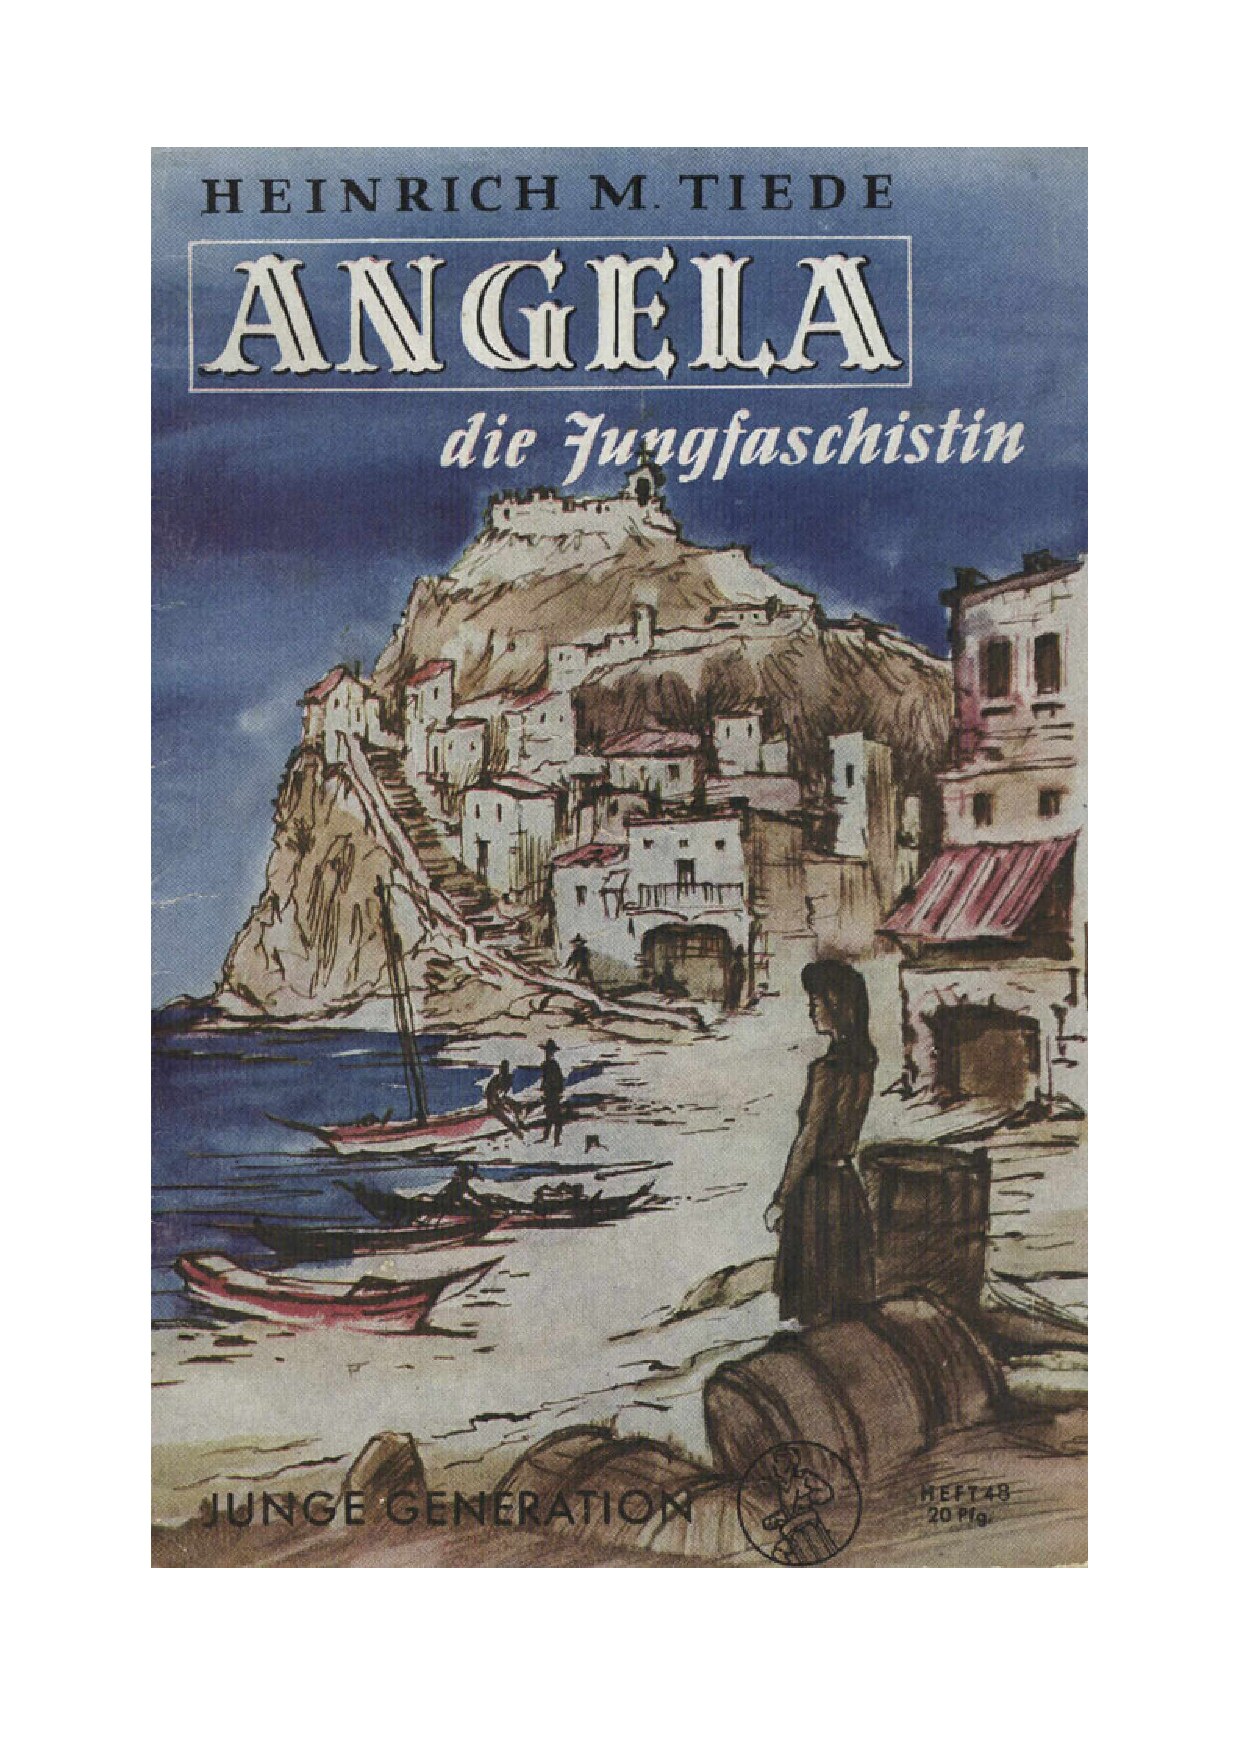 Die Mädelbücherei - Heft 48 - Angela die Jungfaschistin